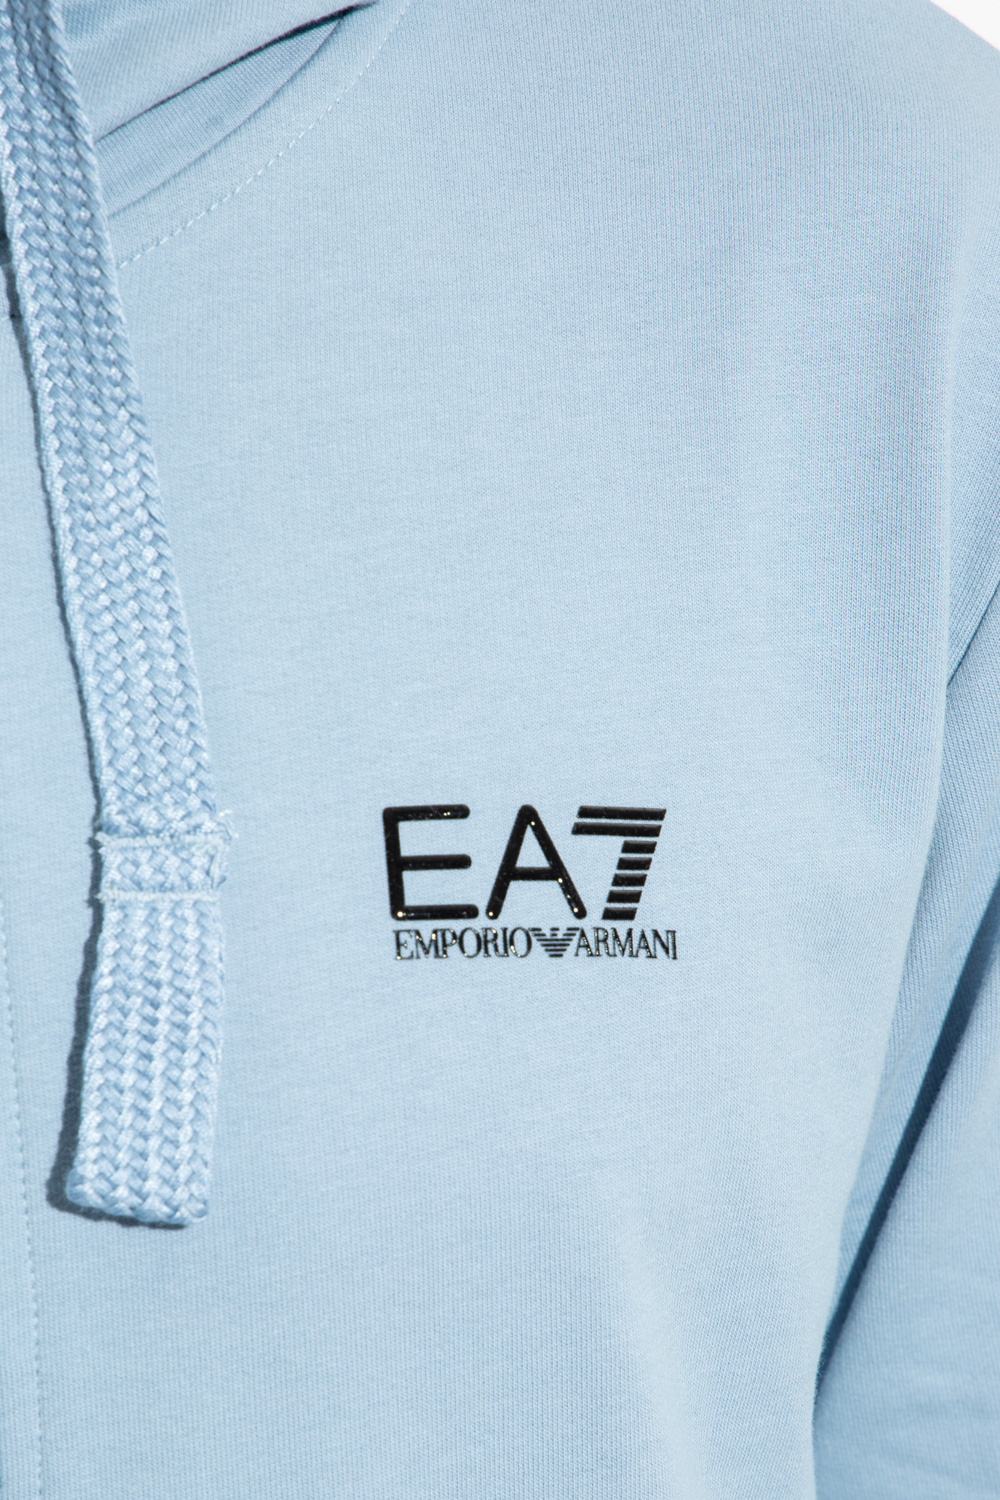 EA7 Emporio Armani giorgio armani cotton tie